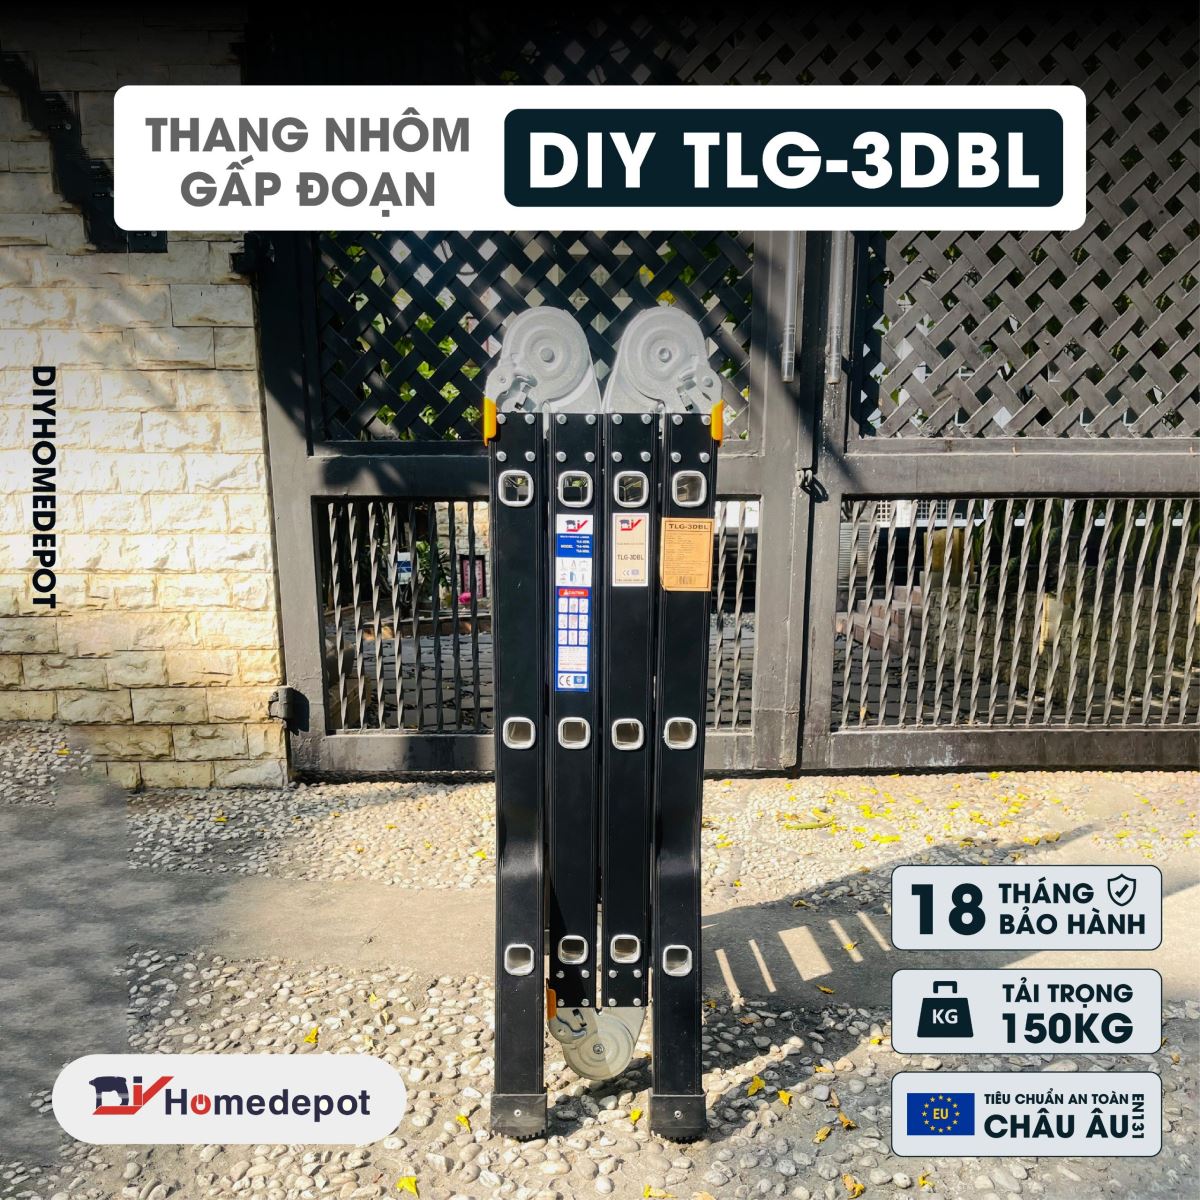 Thang nhôm gấp đoạn cao cấp chân choãi DIY TLG-3DBL chiều cao sử dụng chữ A 1.75M chữ I 3.6M